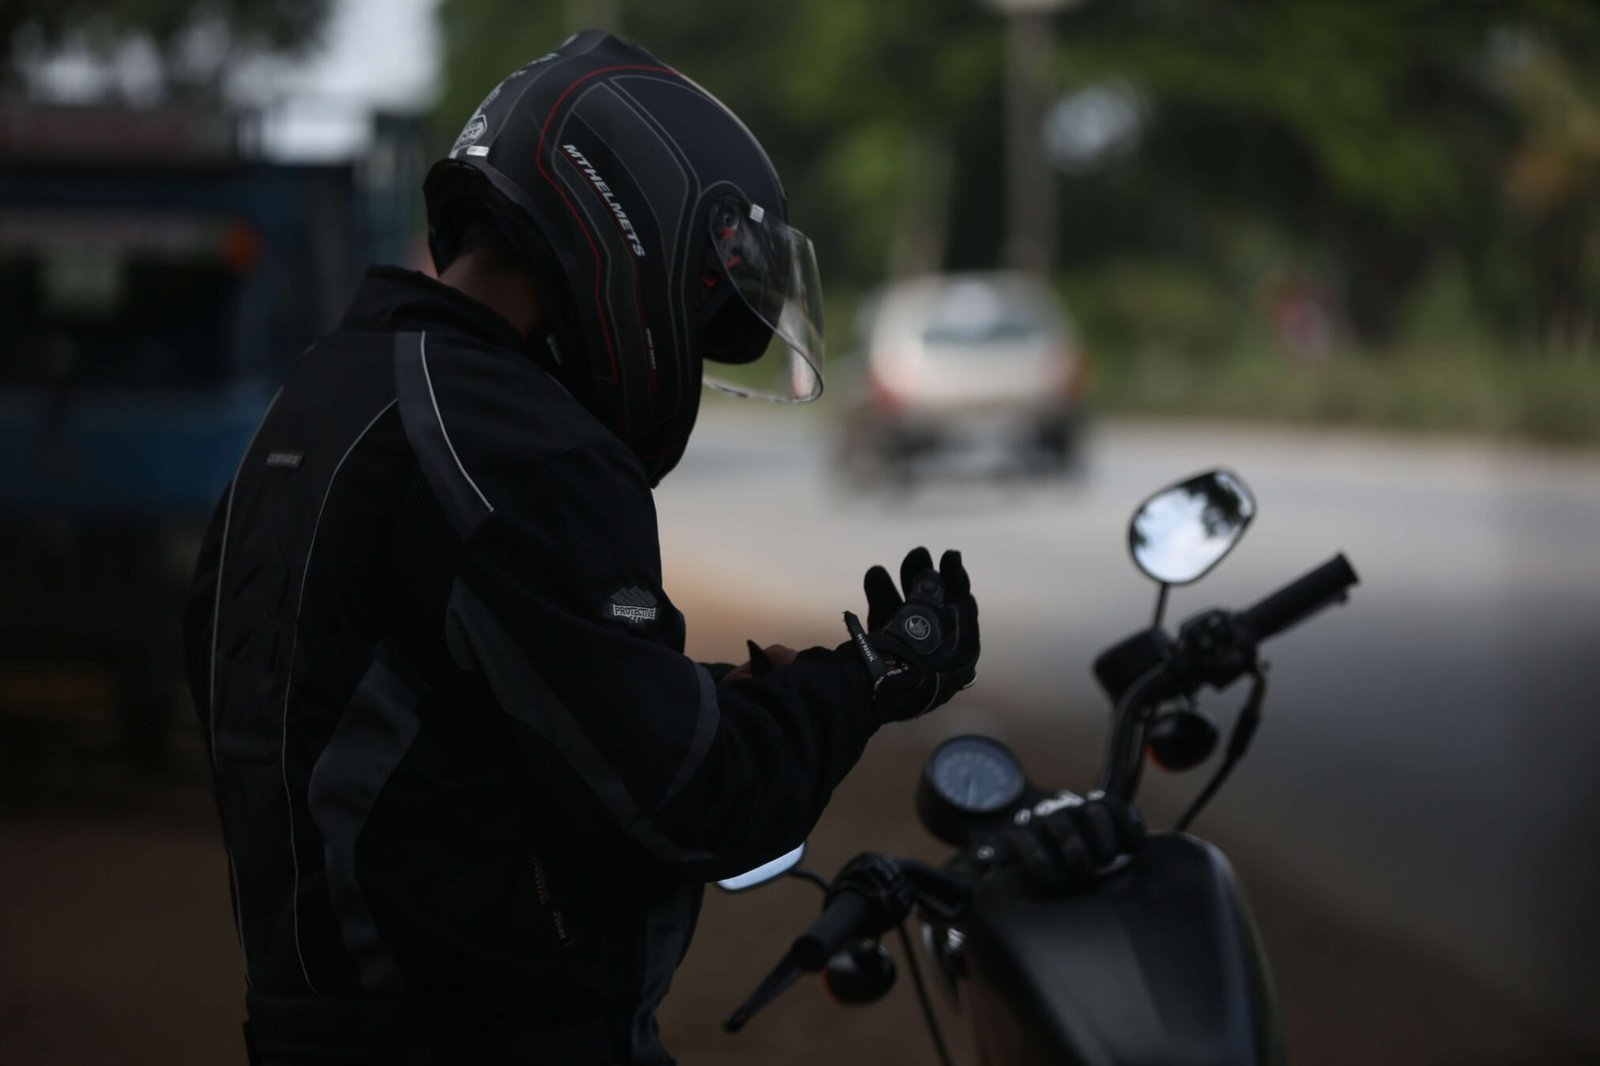 Principais Equipamentos para Motociclistas pilotar a moto em segurança